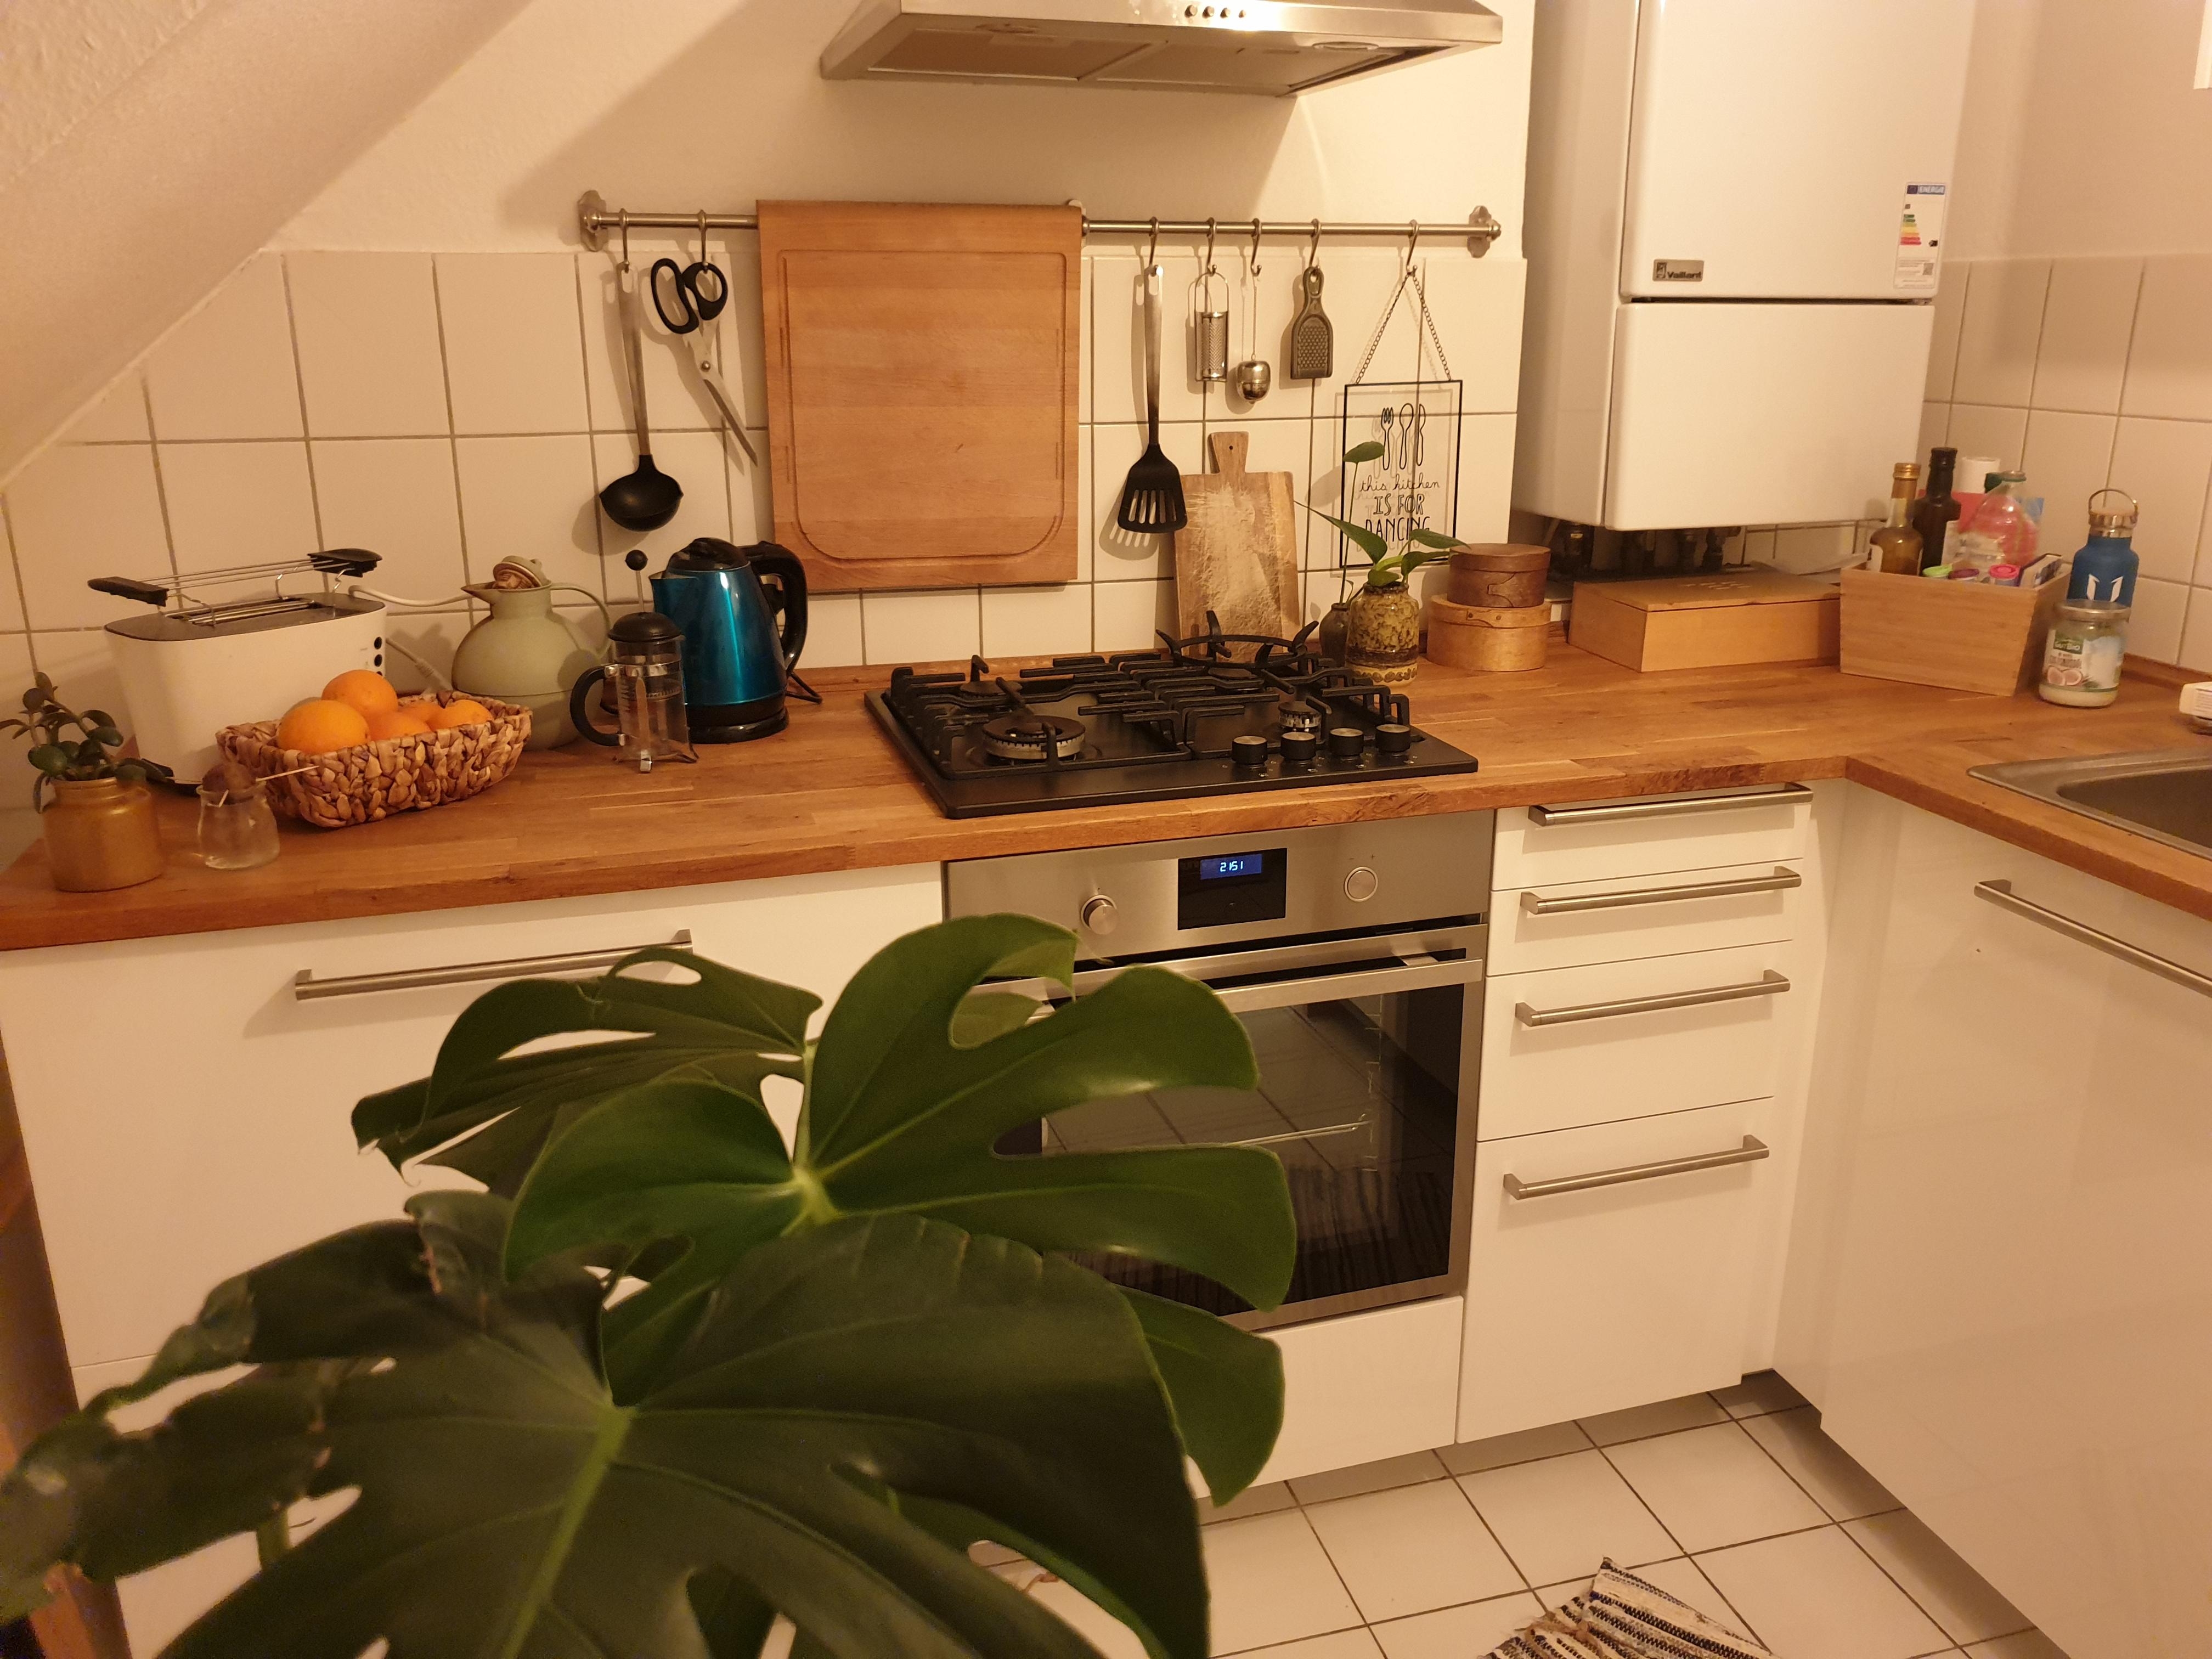 Ich liebe meine Küche, die Pflanzen und das Holz ❤
#küchenliebe 
#livingchallenge
